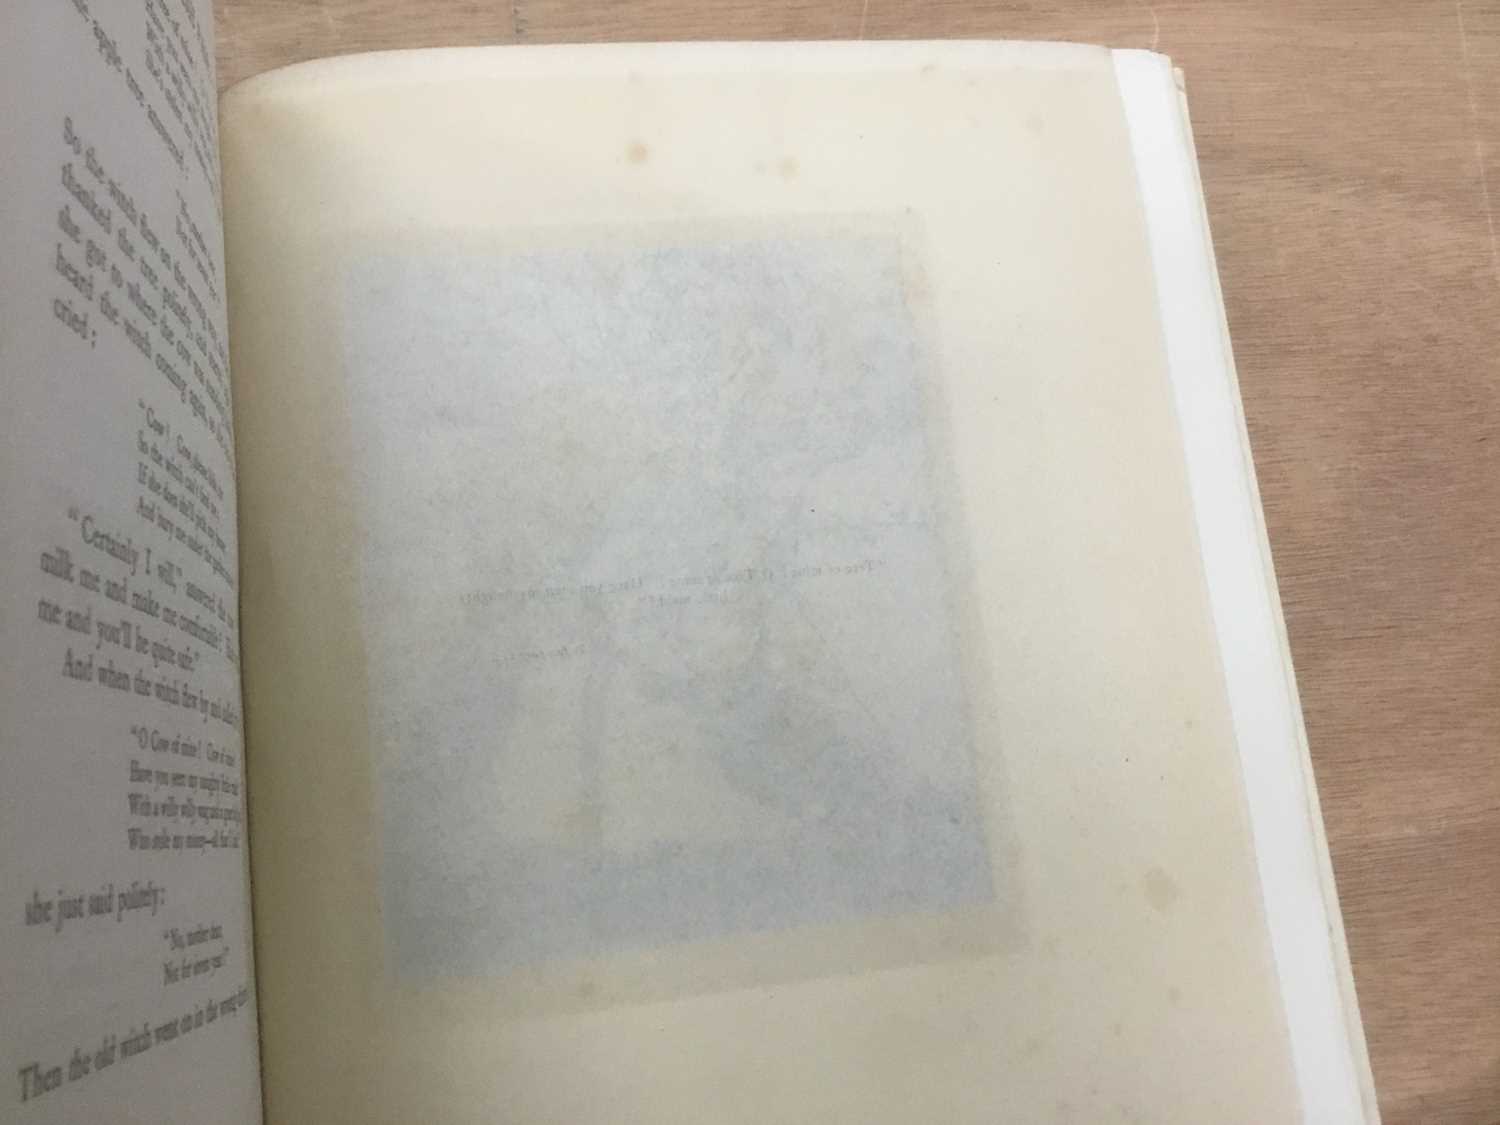 Arthur Rackham - English Fairy Tales, signed limited edition 389/500, white velum binding - Image 9 of 10